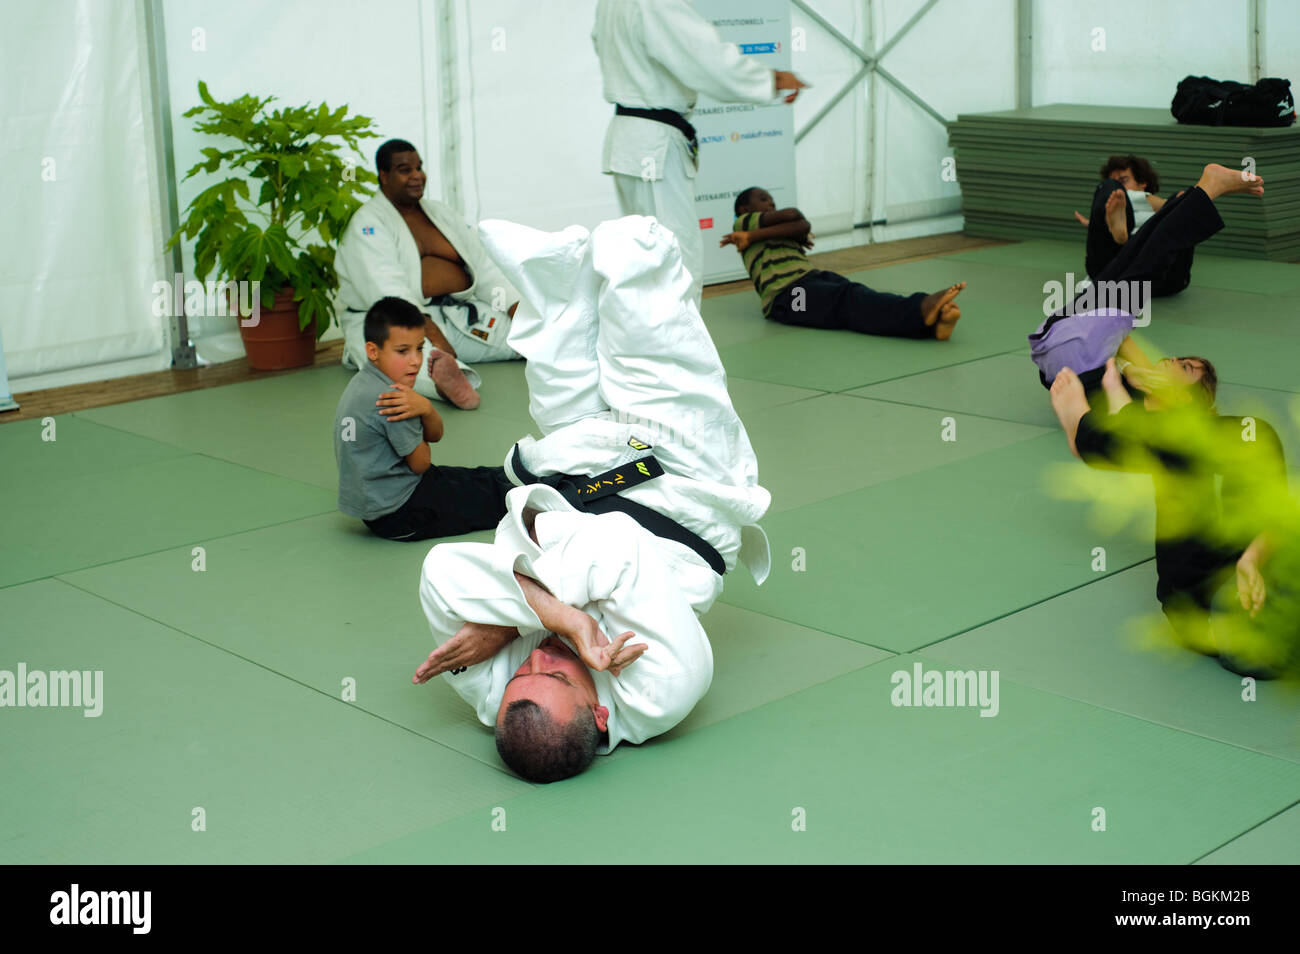 Paris, Frankreich - Behinderte Athleten Lehrer unterrichten Kinder in Karate-Klasse am Schulsporttag Stockfoto